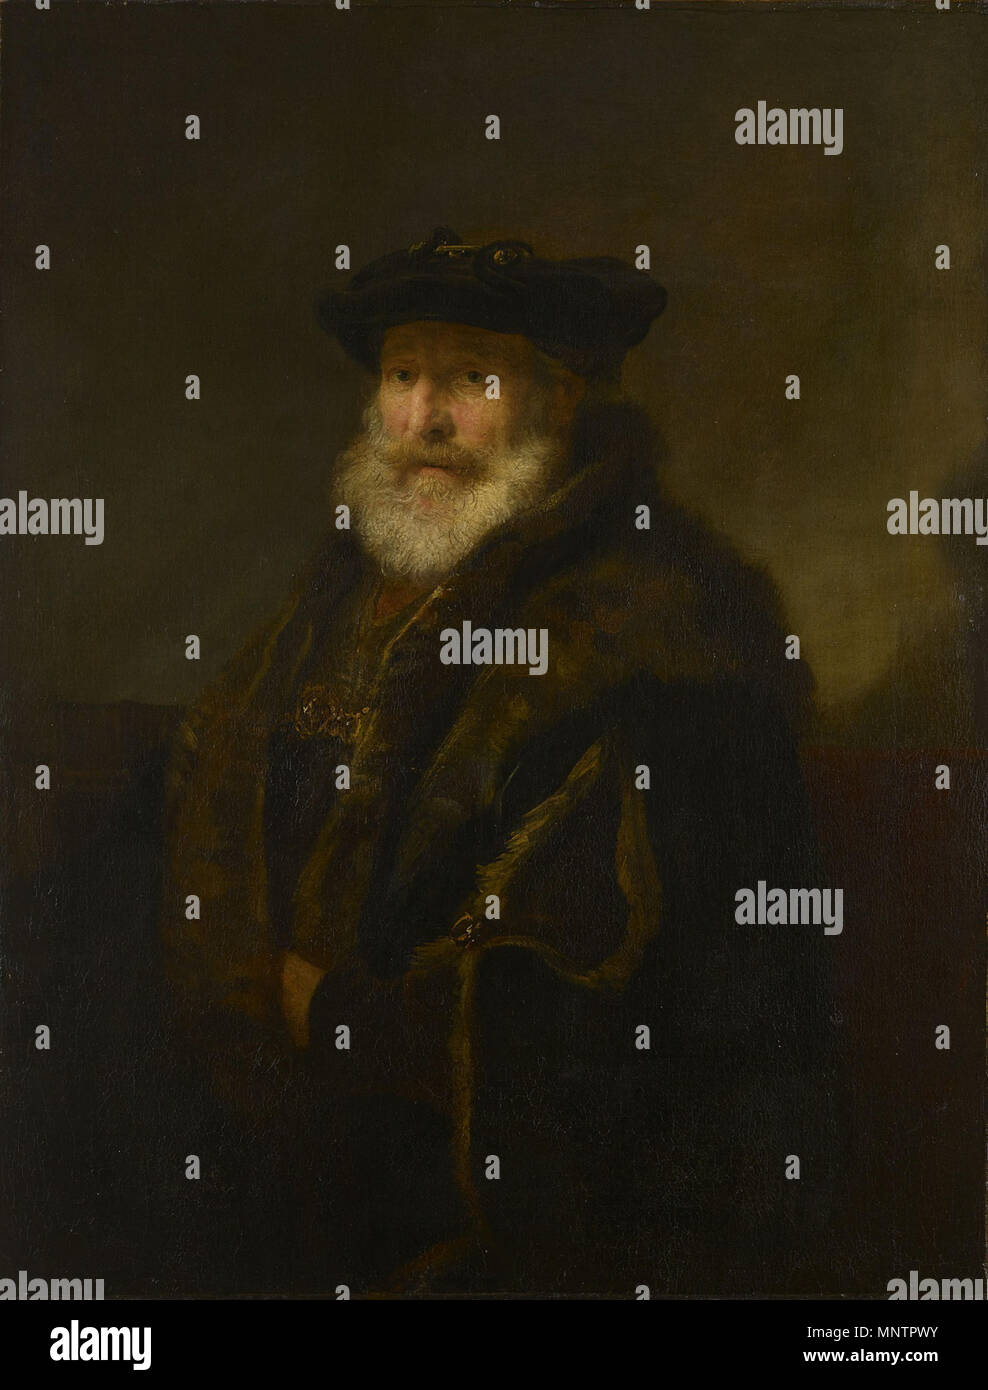 Anglais : un rabbin dans un manteau de fourrure . Cet objet est classé dans  RKDimages, base de données de l'Institut néerlandais pour l'histoire de  l'Art, sous la référence 282841. Čeština